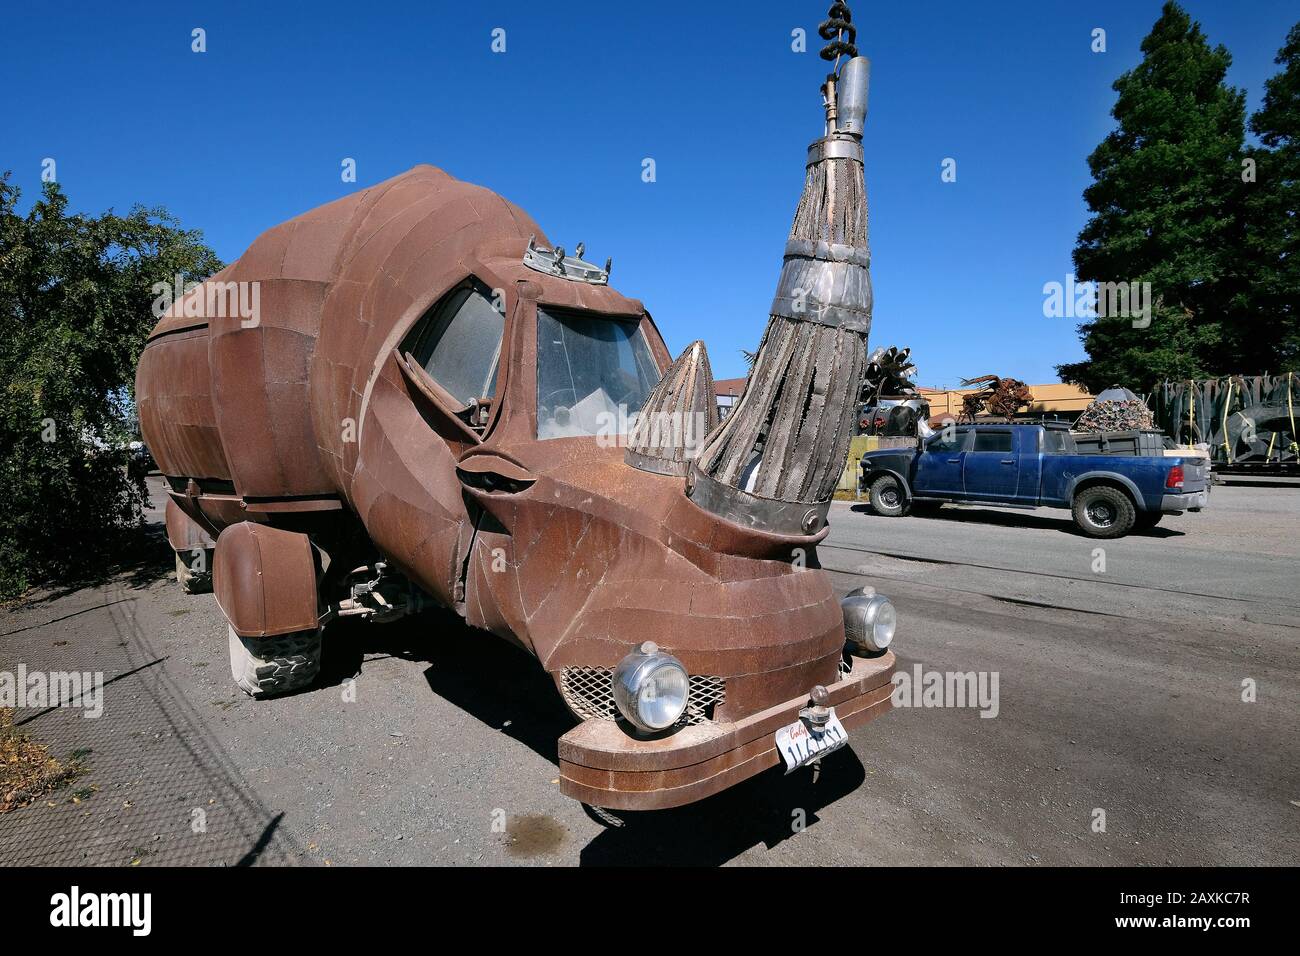 Fantastic vehicle for the Burning Man Festival on a site in Petaluma, California, USA Stock Photo